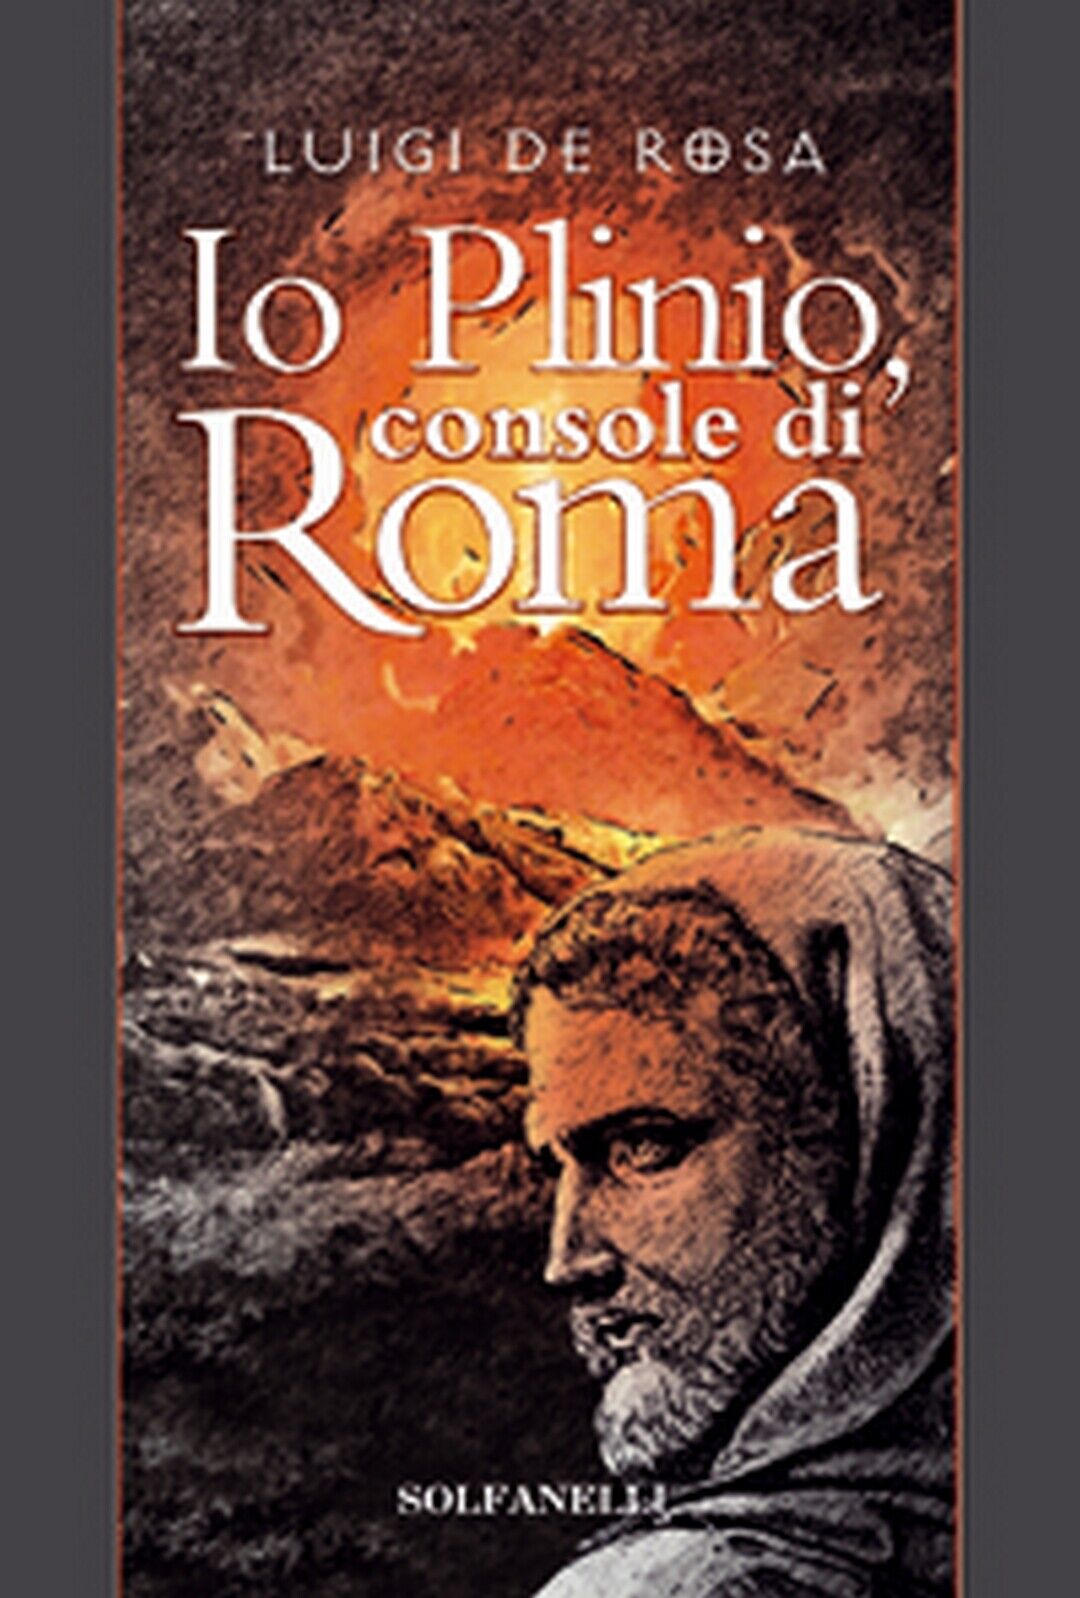 IO PLINIO Console di Roma  di Luigi De Rosa,  Solfanelli Edizioni